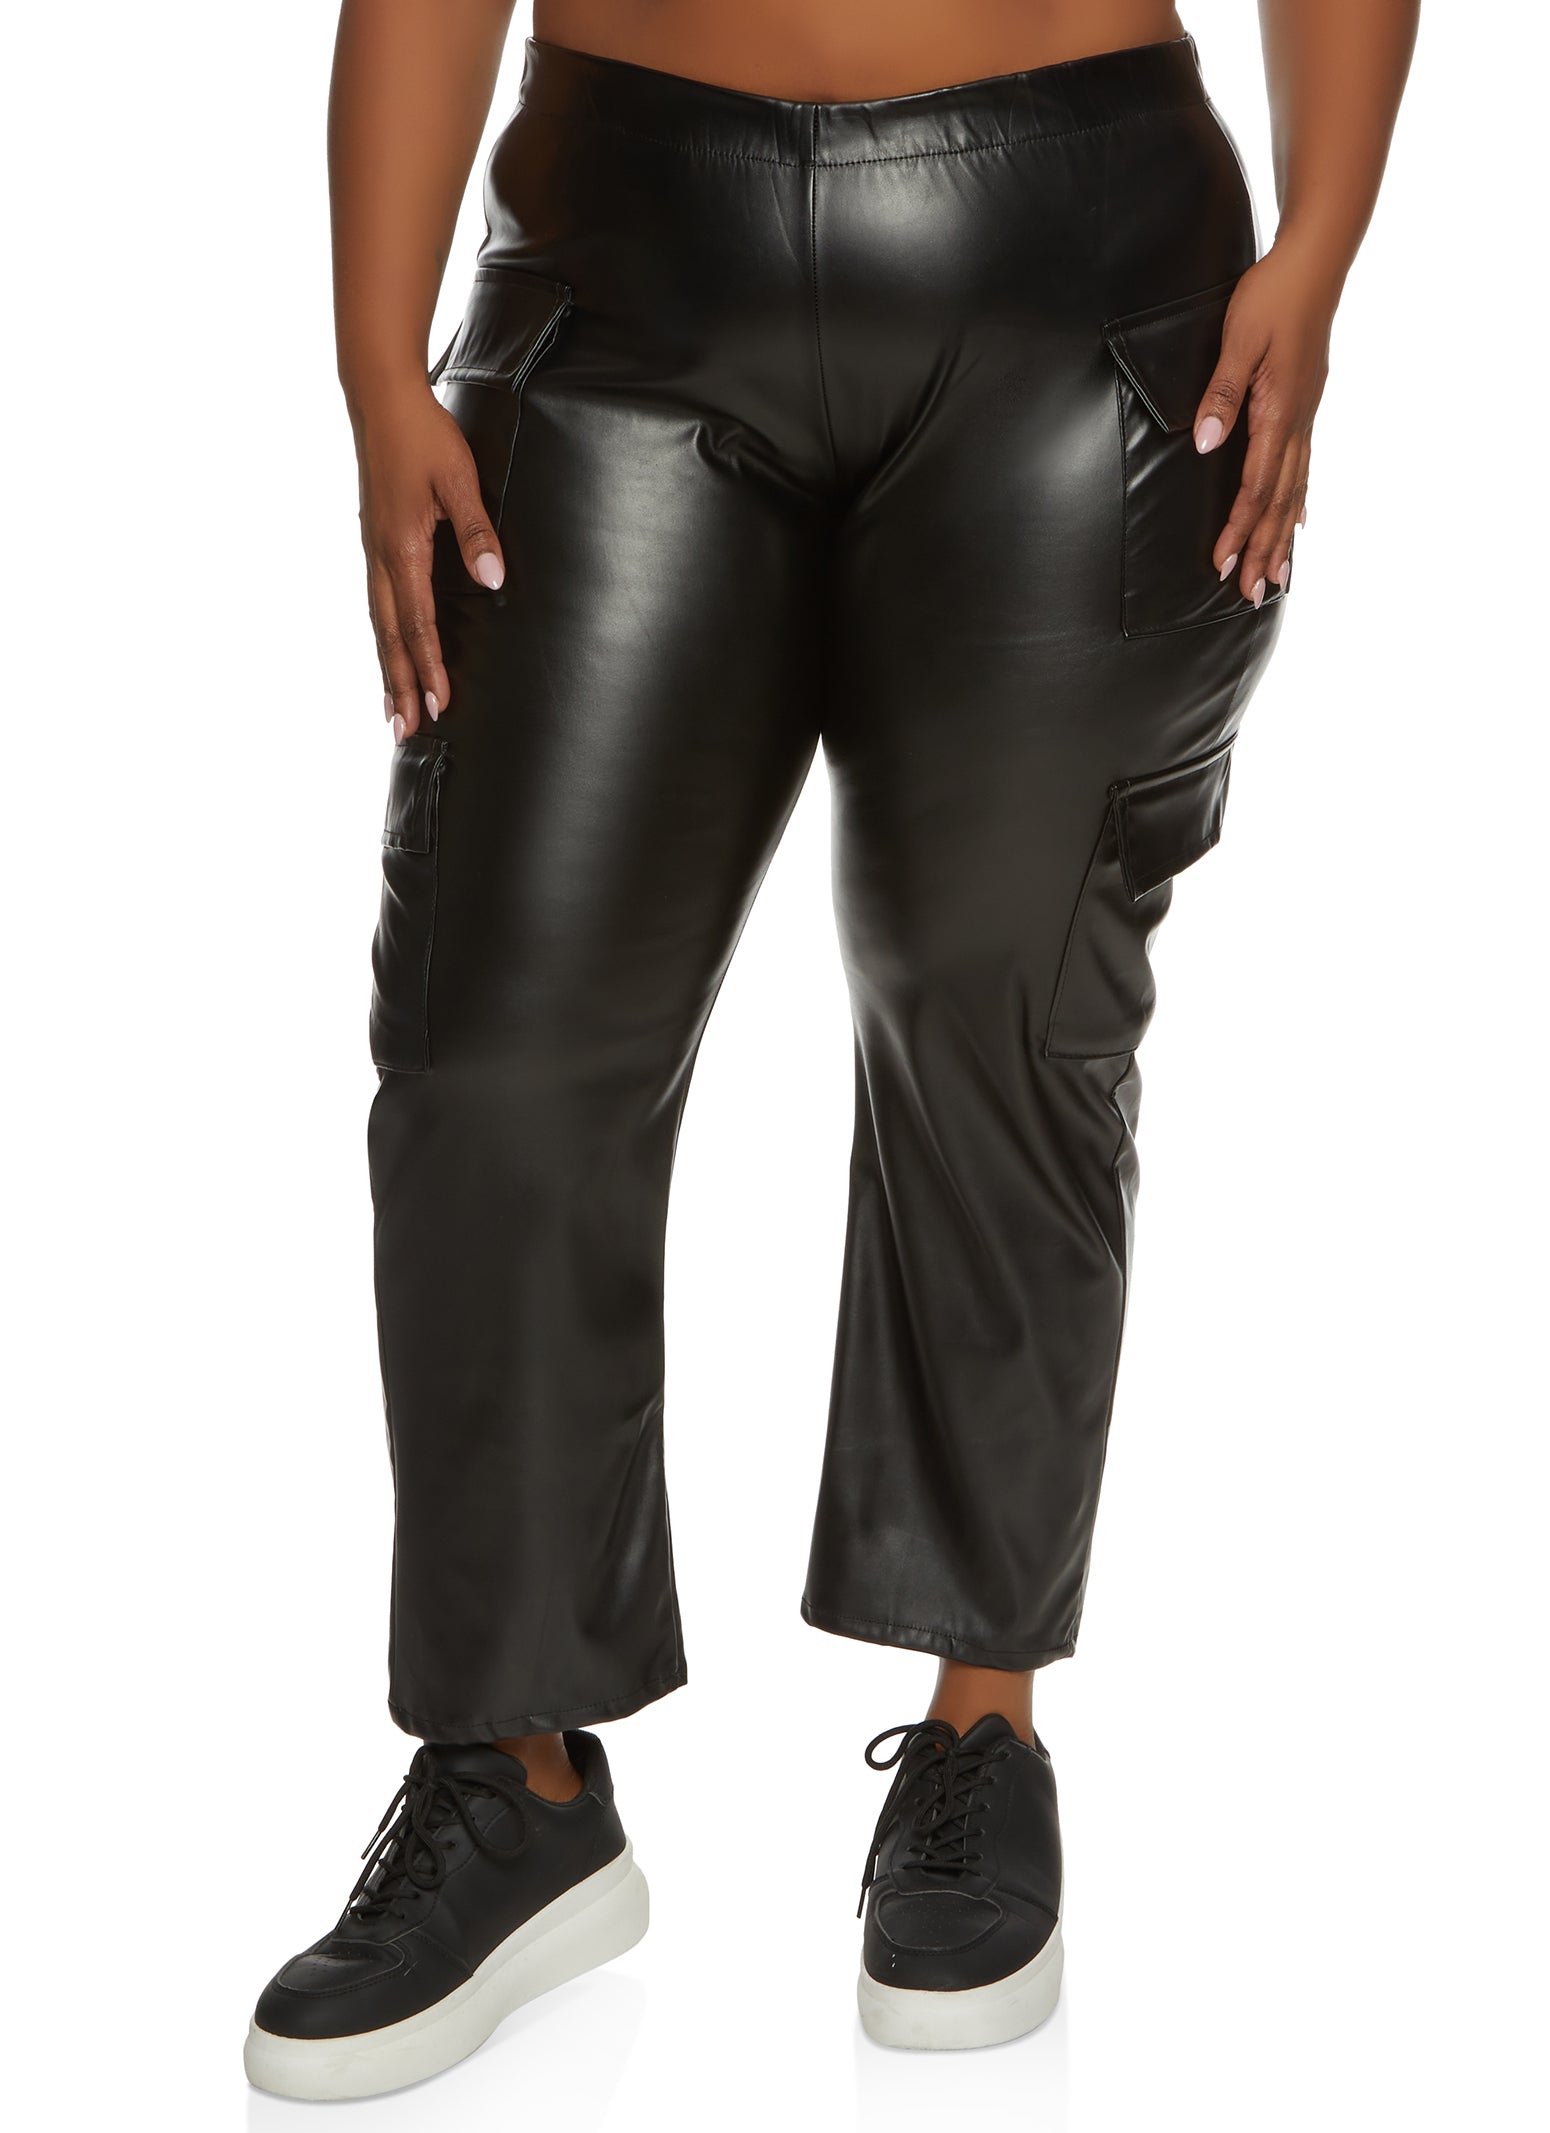 TIYOMI Ladies Plus Size Pants 4X Dark Grey Casual Full Length